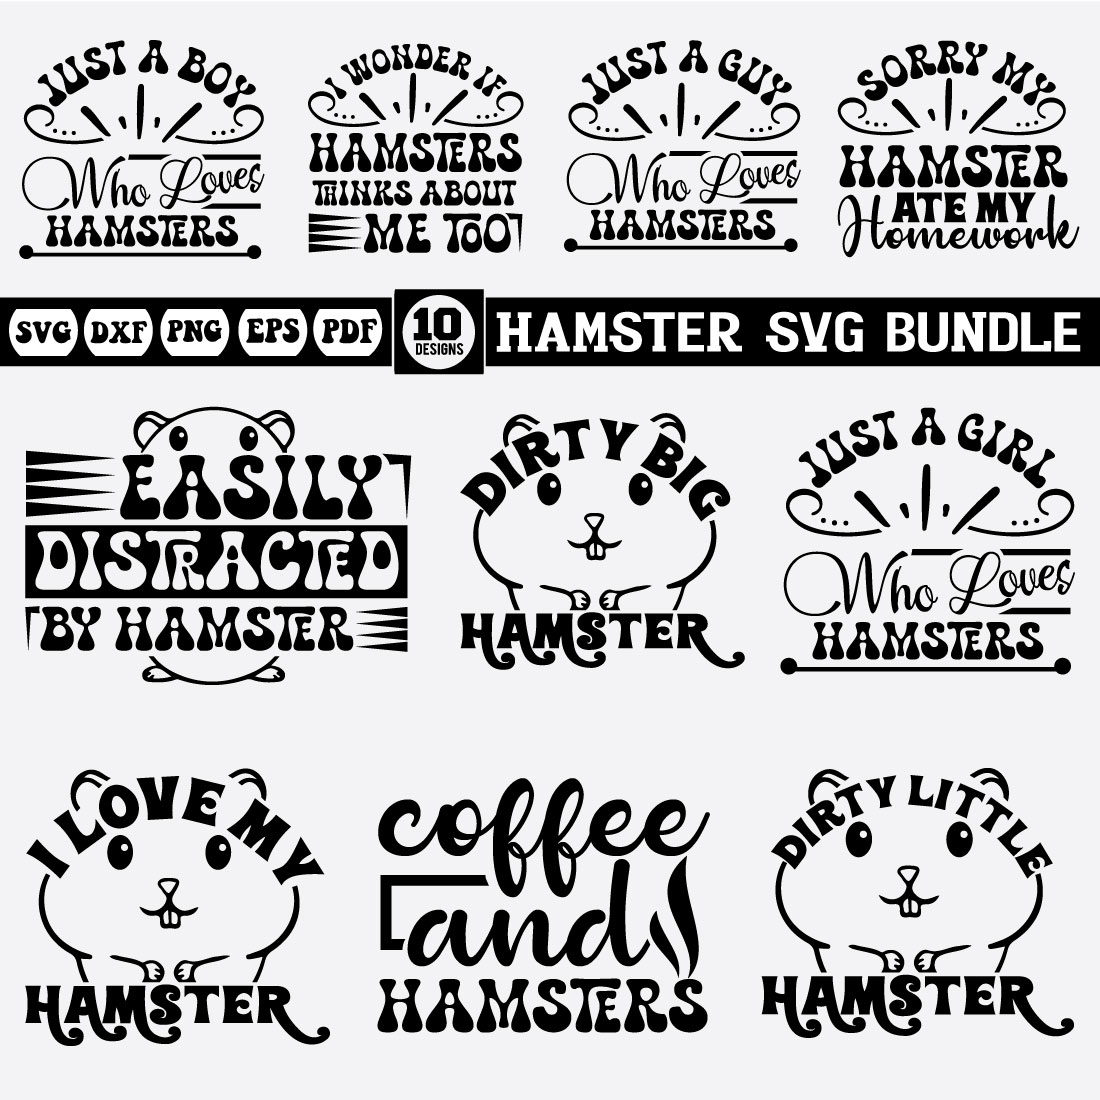 Hamster Svg Bundle cover image.